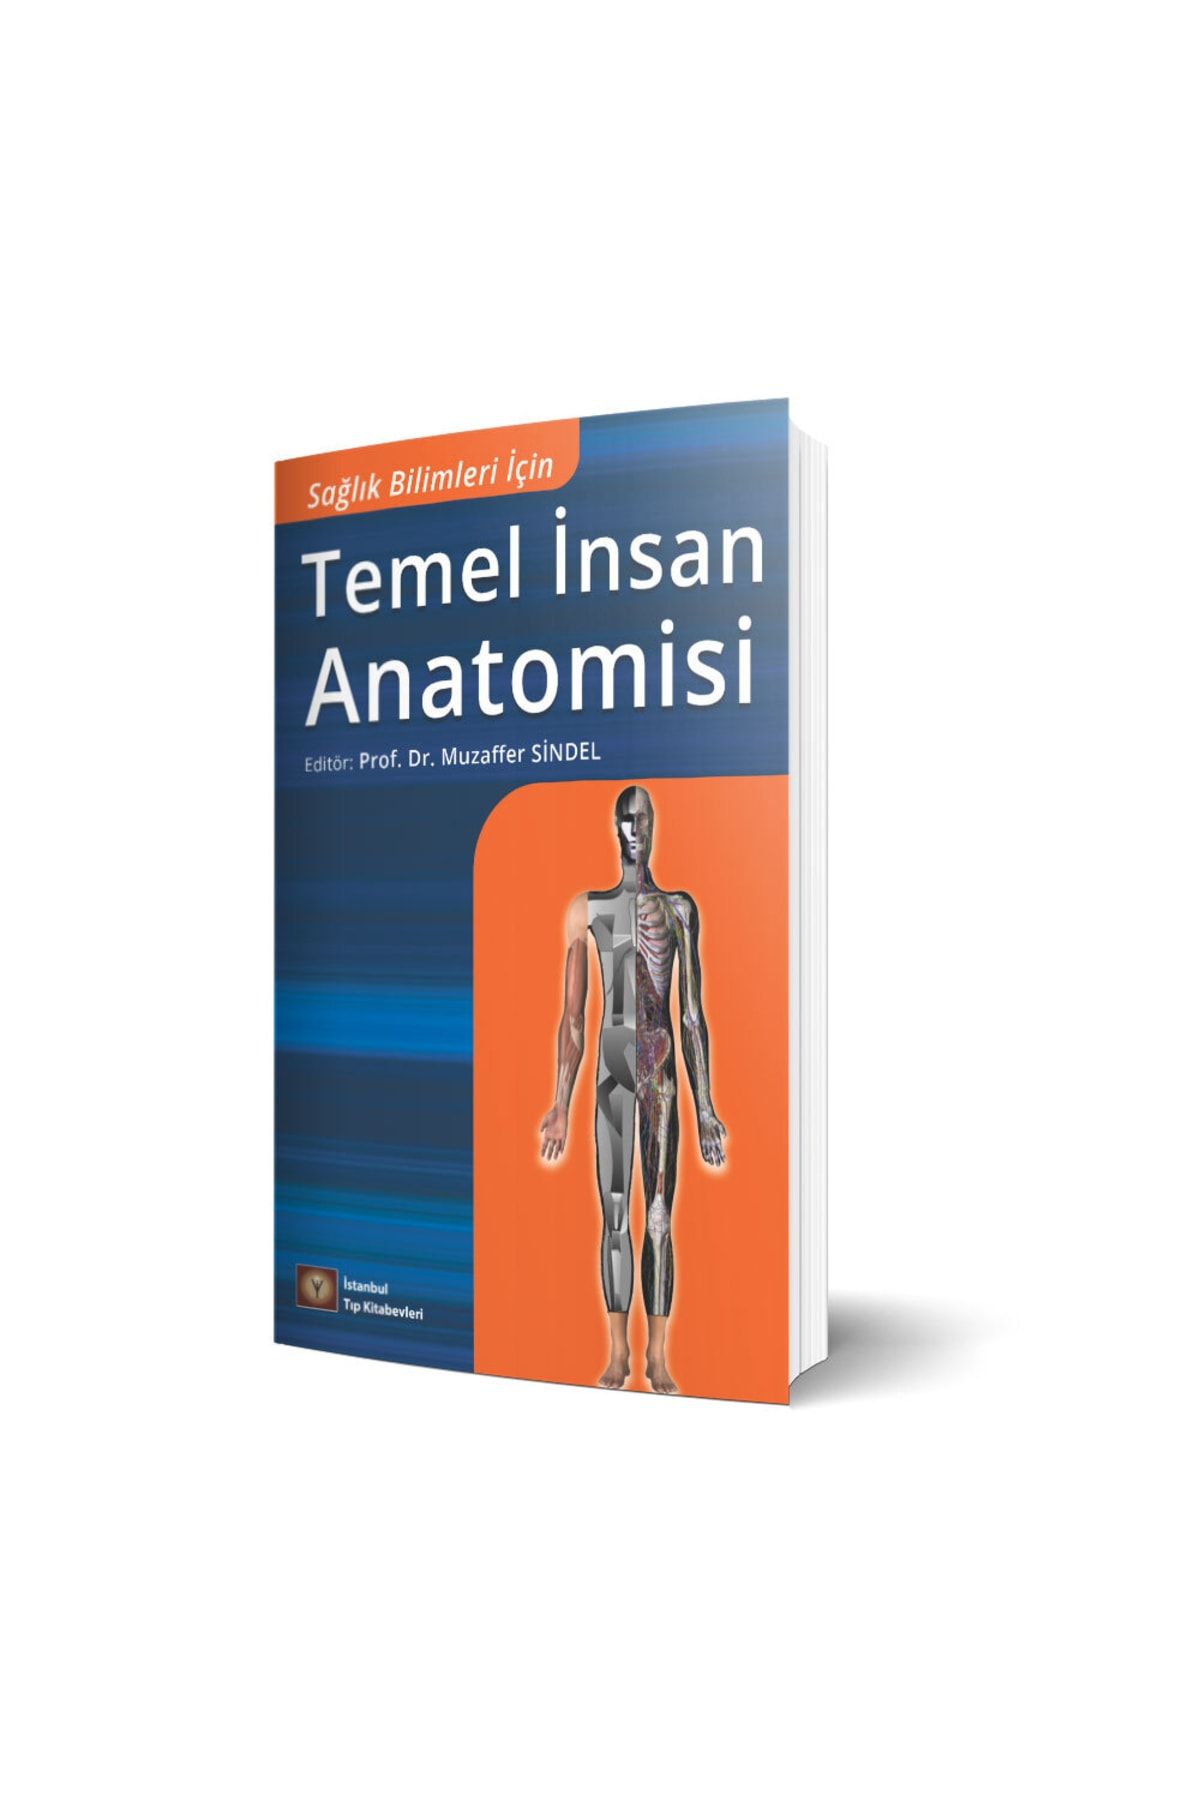 İstanbul Tıp Kitabevi Yeni Sağlık Bilimleri Için Temel Insan Anatomisi